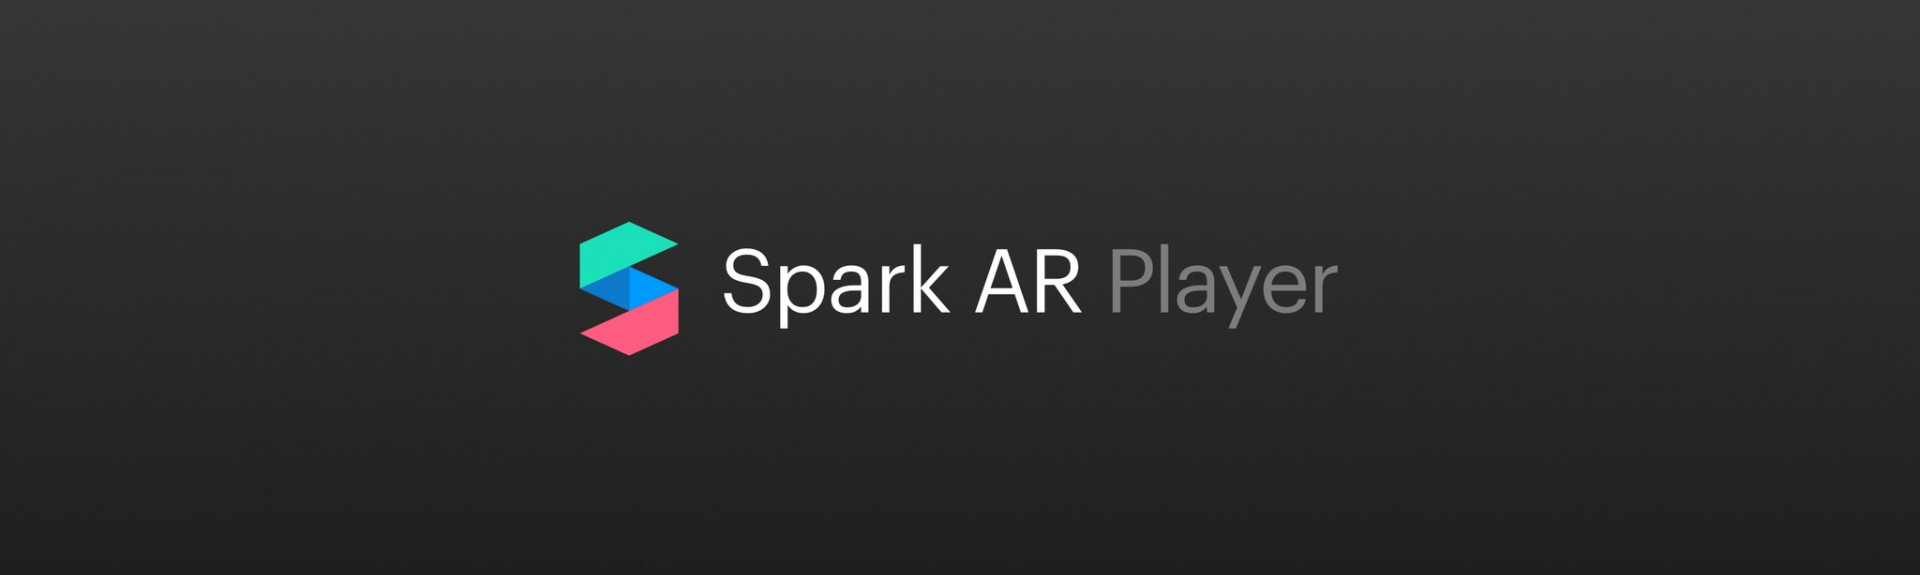 Spark AR Player